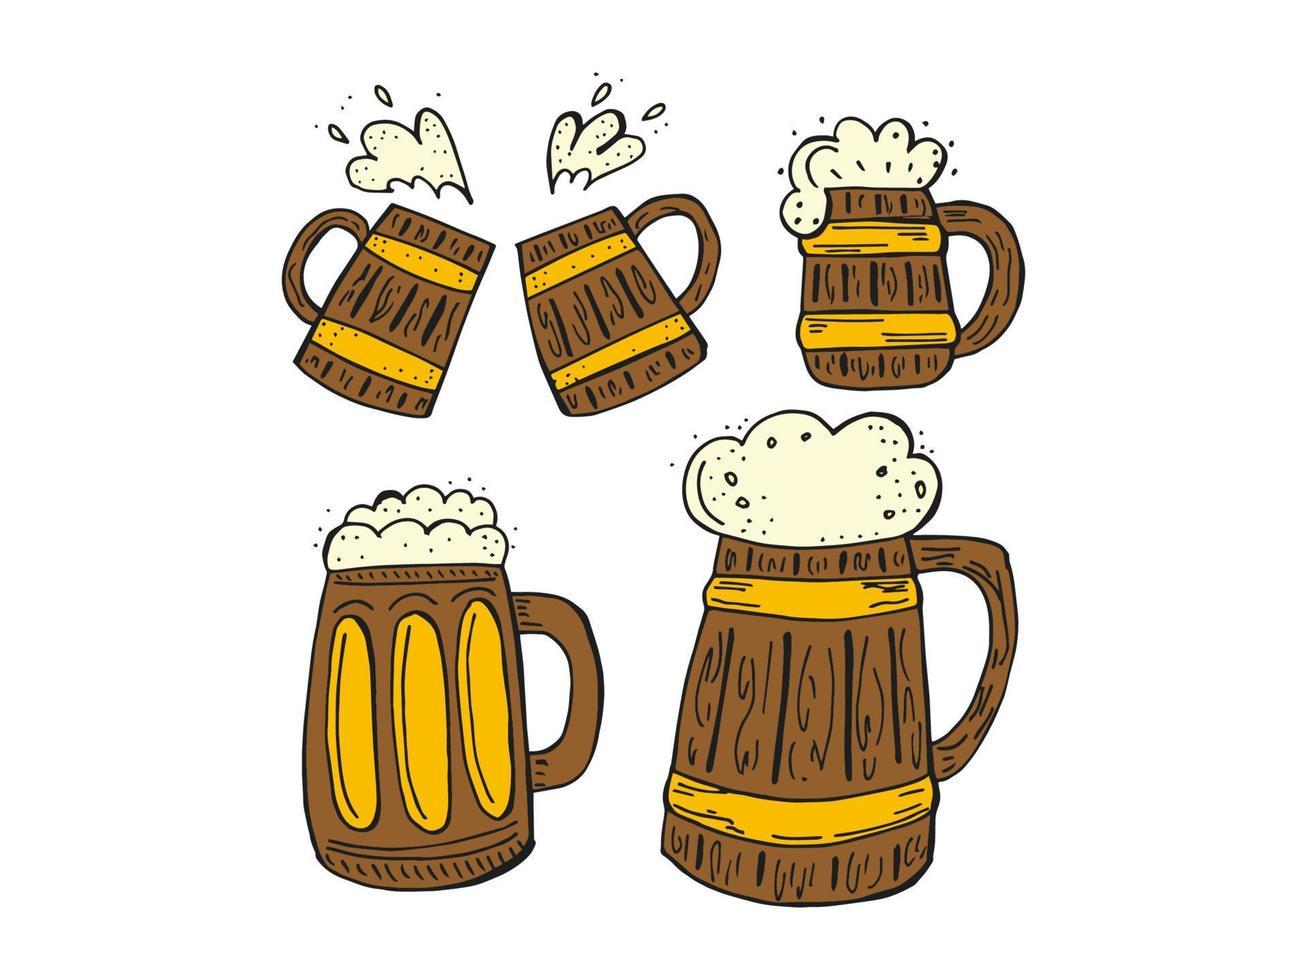 oktoberfest 2022 - bierfestival. handgetekende set doodle elementen. Duitse traditionele vakantie. gekleurde houten bierpullen op een witte achtergrond. vector